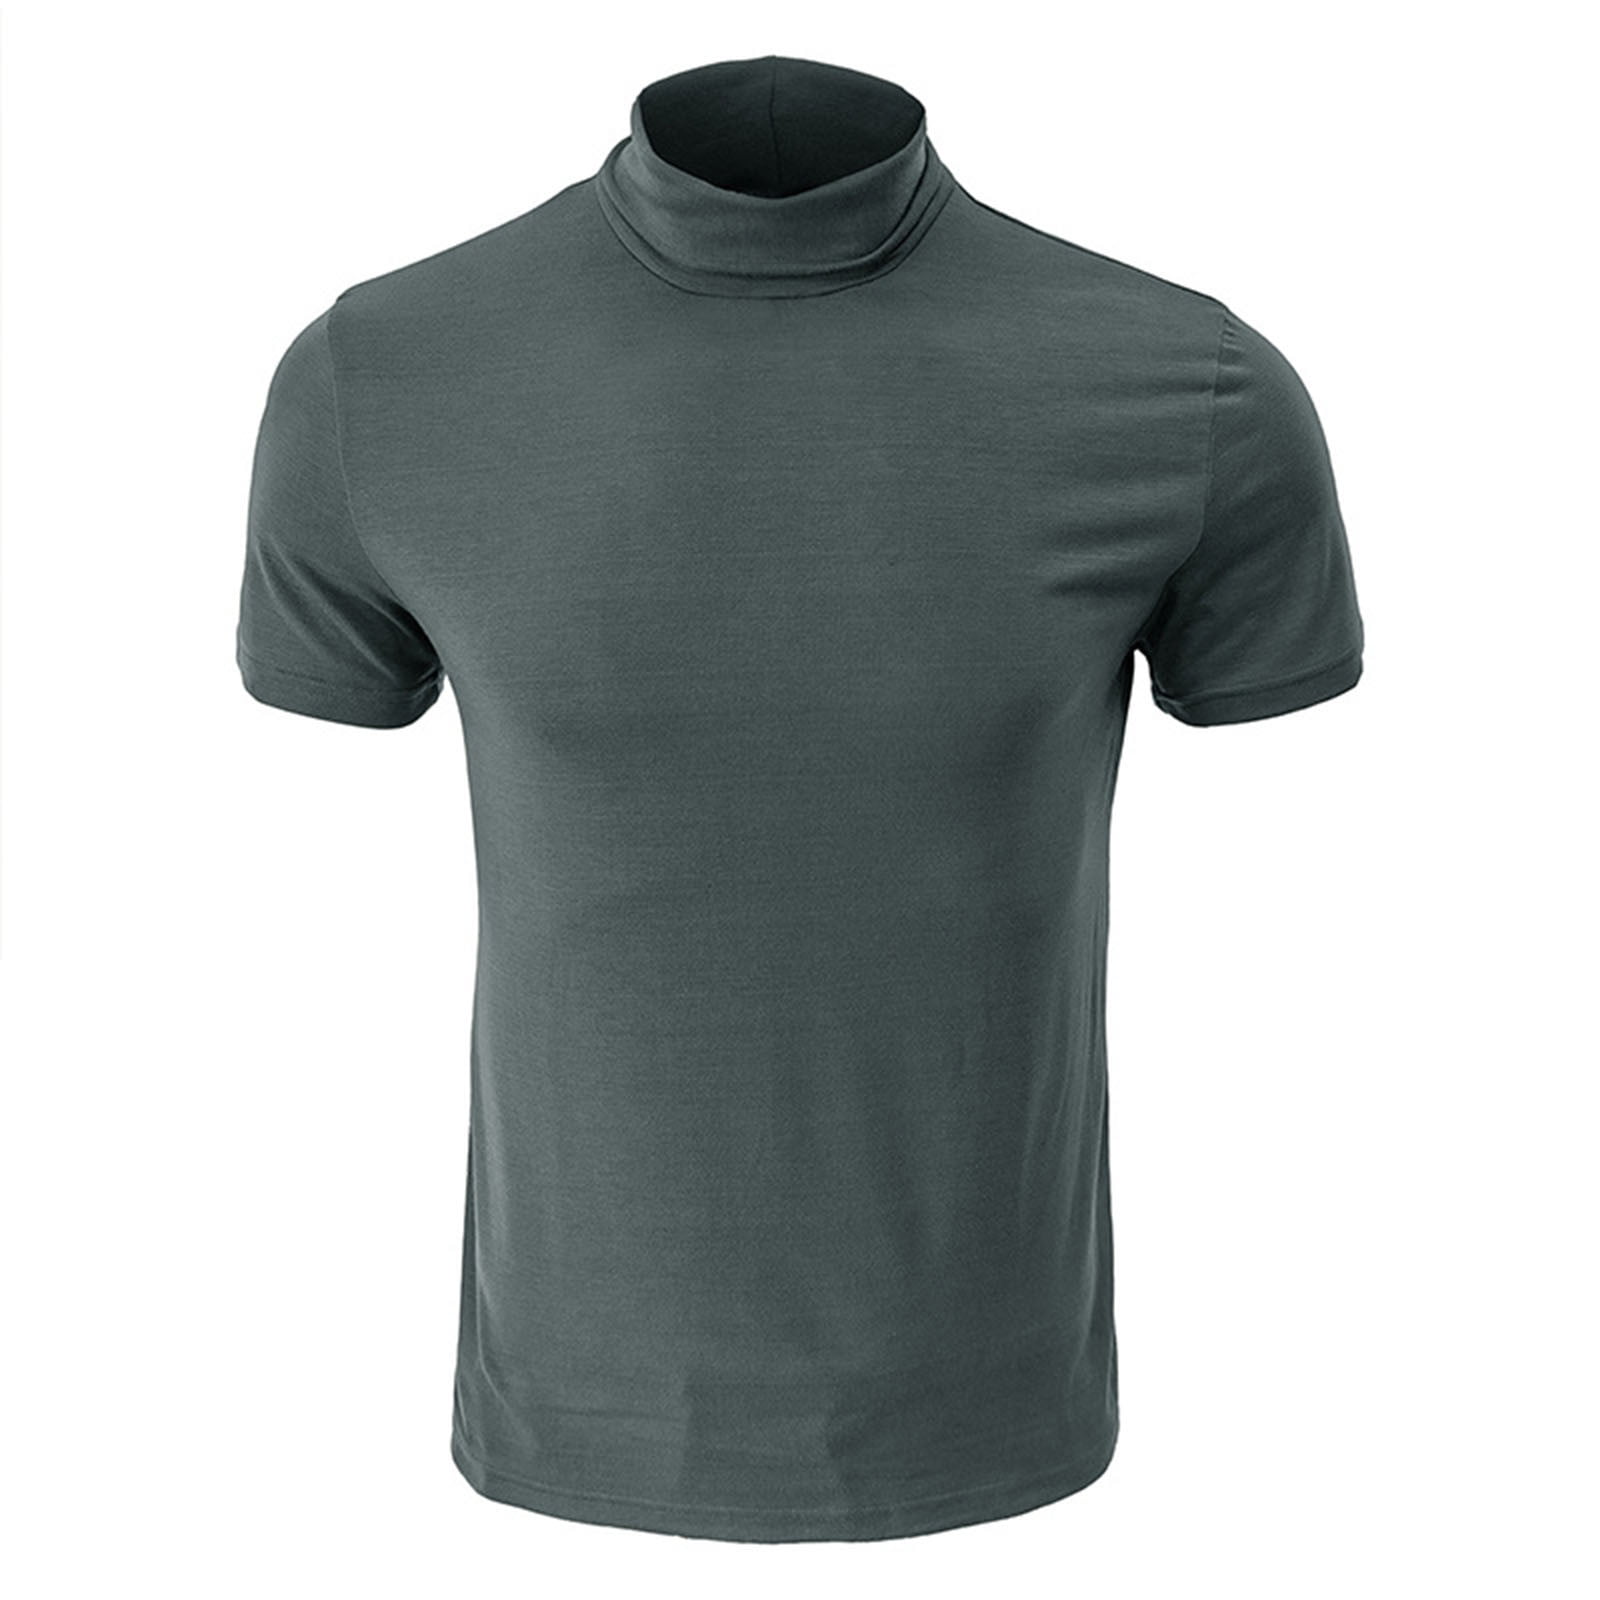 YYDGH Mens Mock Turtleneck T Shirts Short Sleeve Solid Color